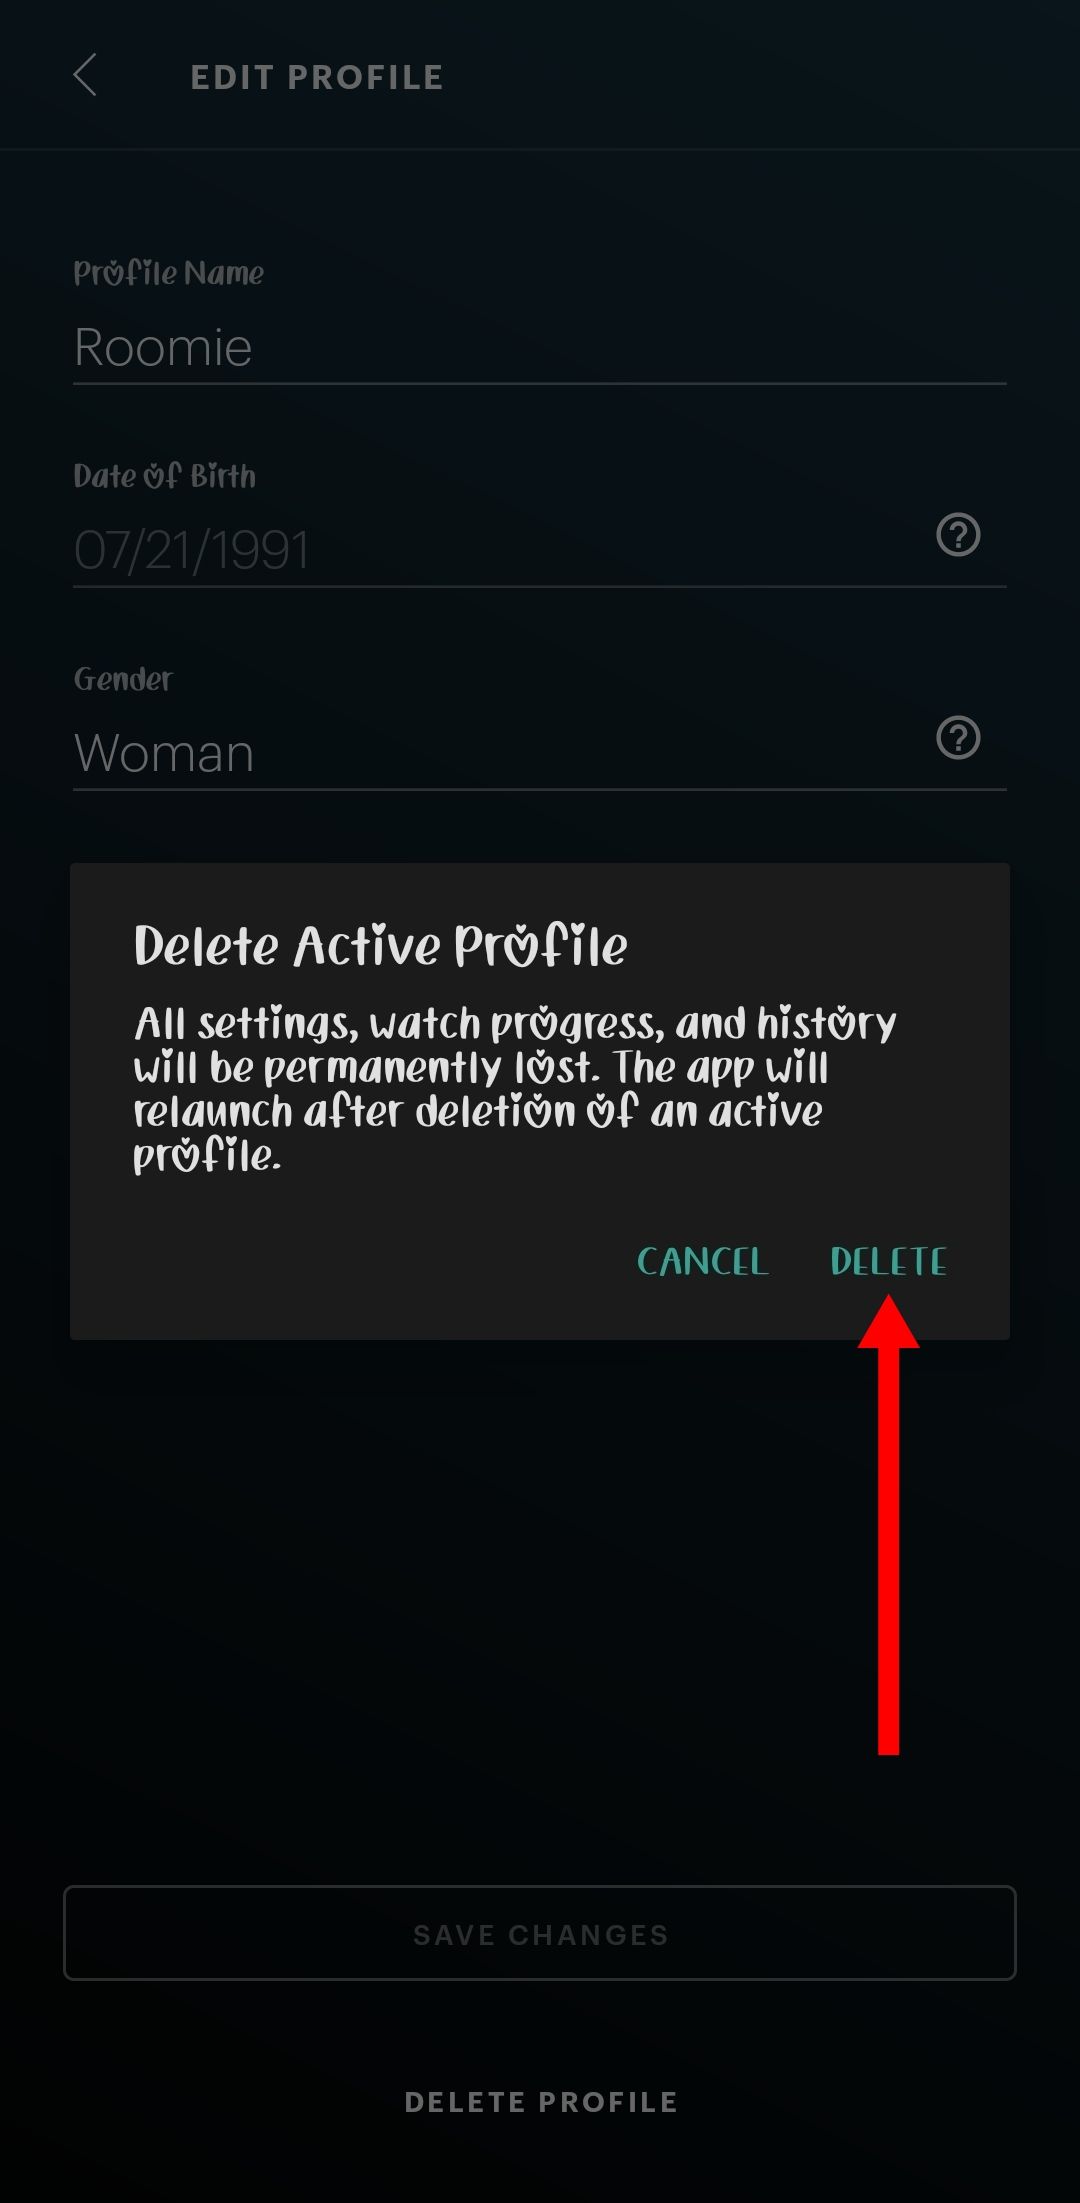 Captura de tela da confirmação de exclusão do perfil no aplicativo Hulu